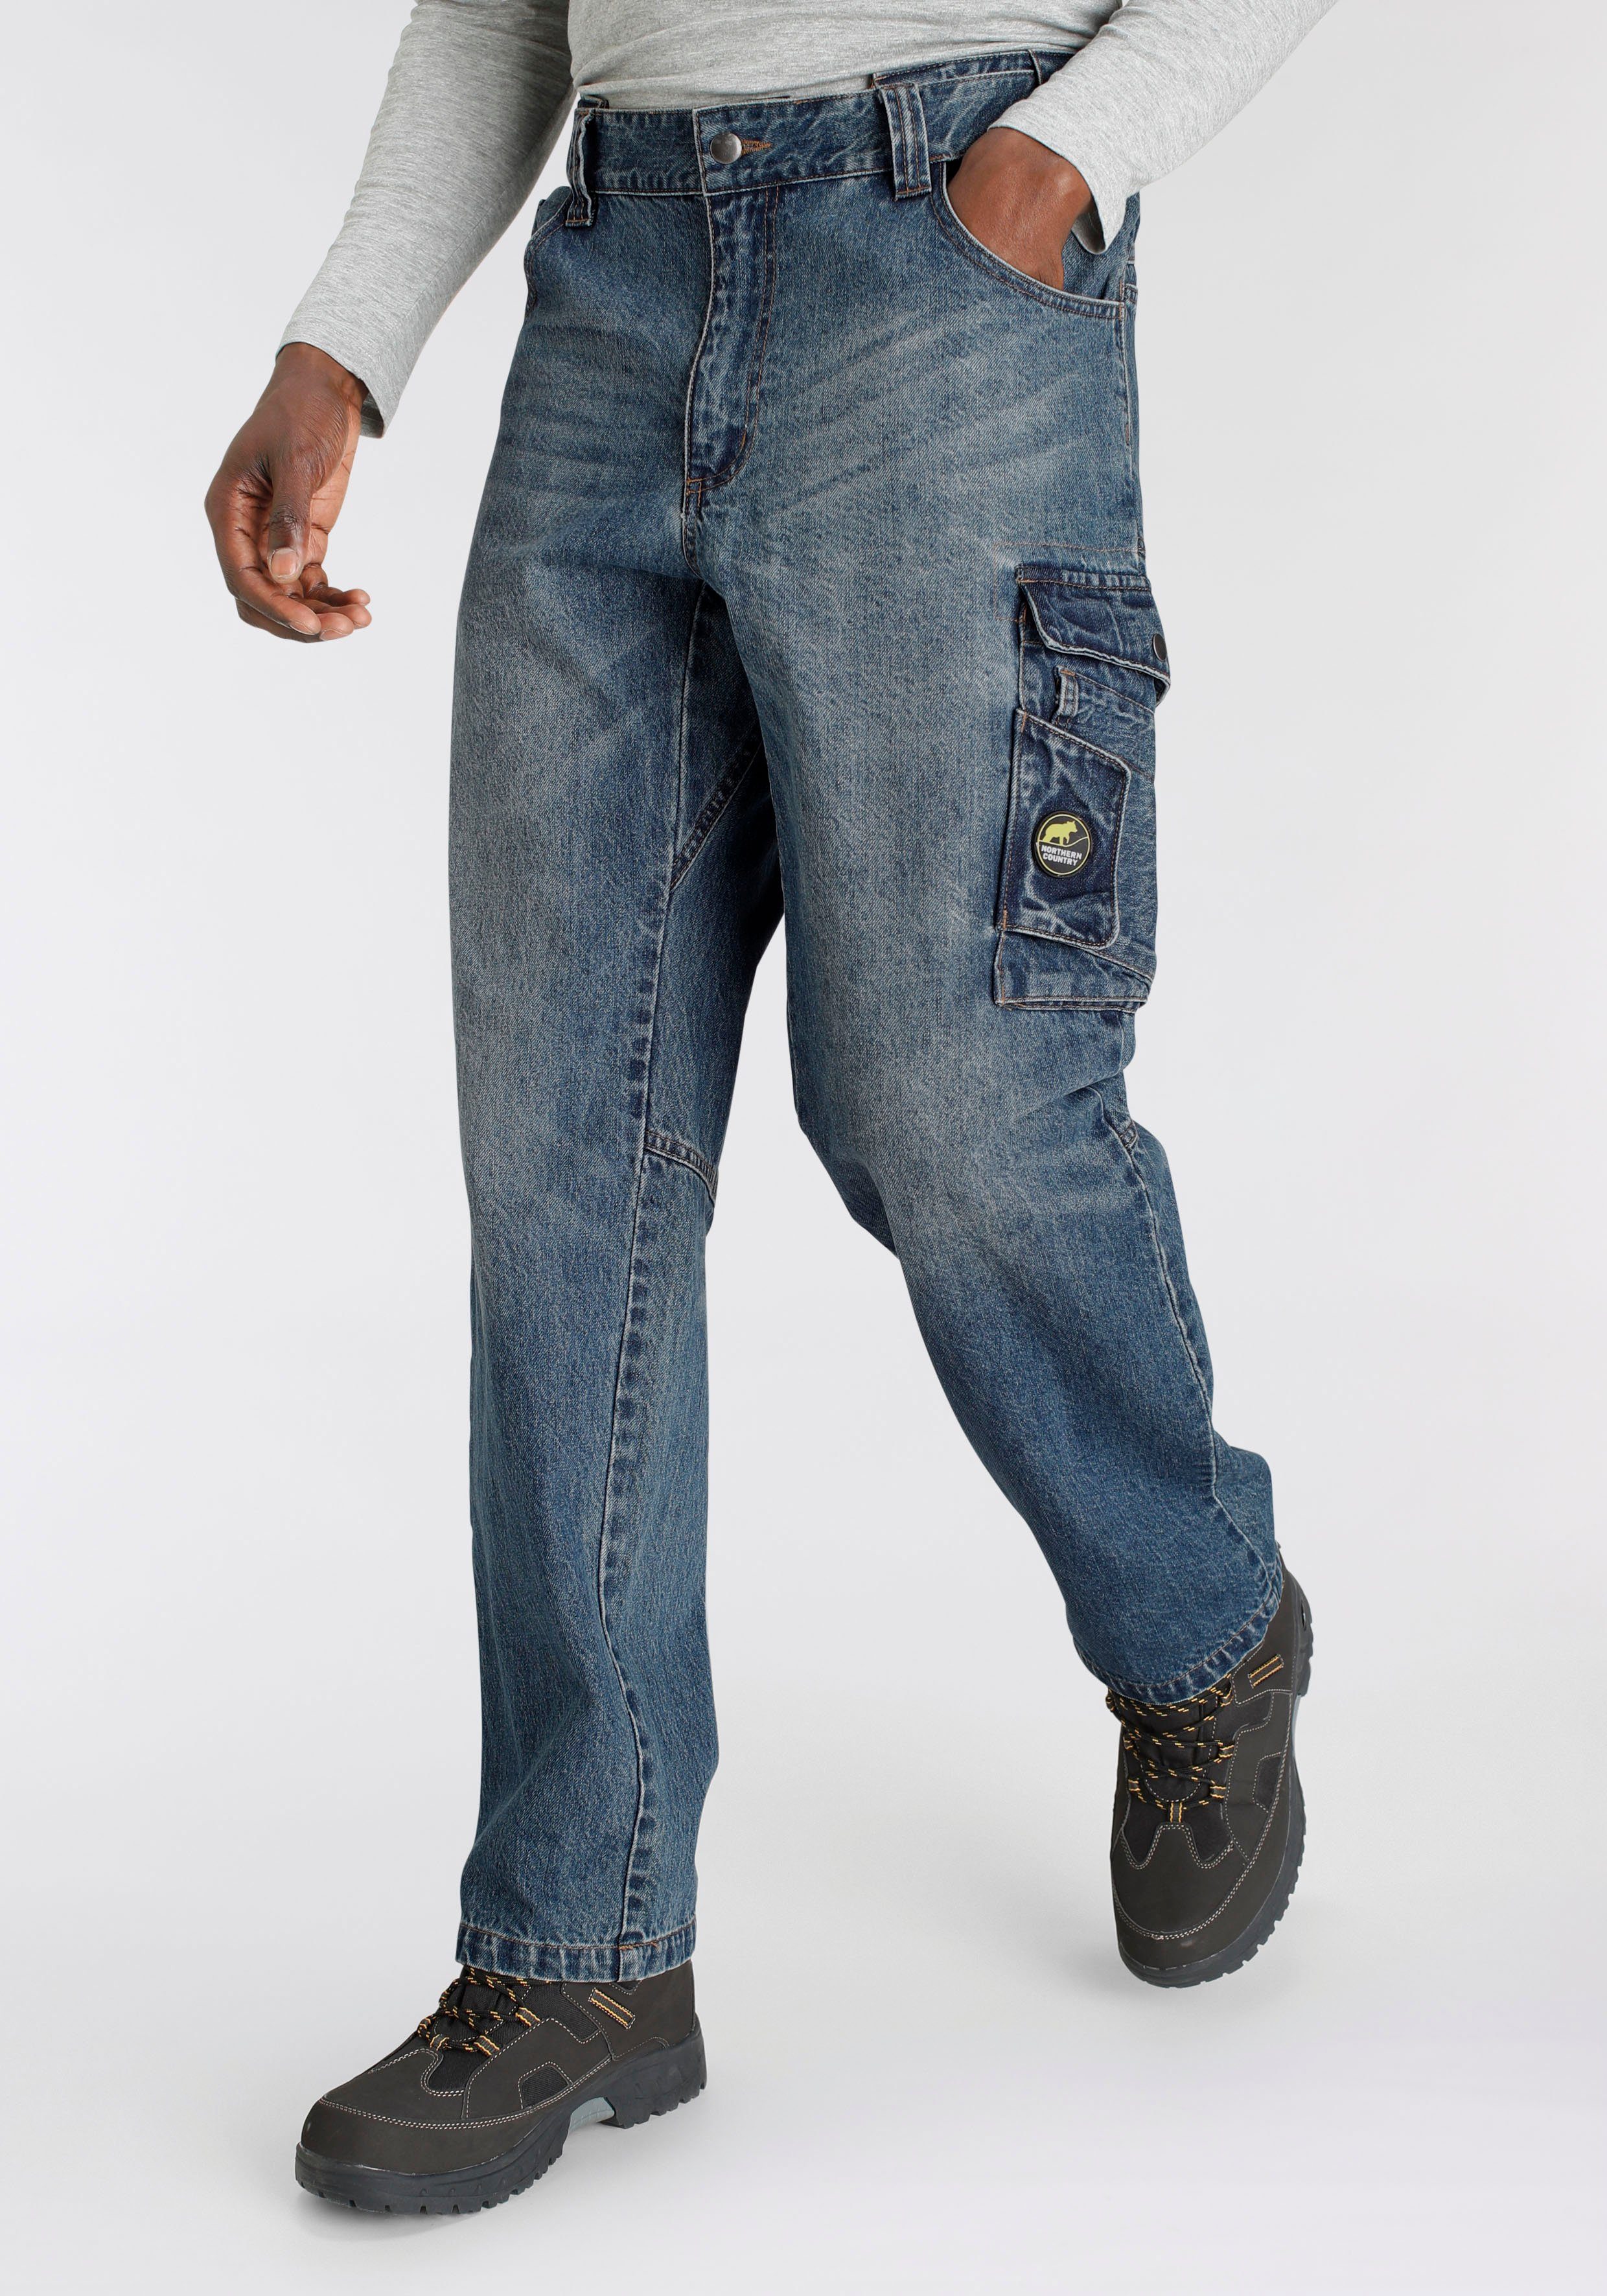 Northern Country robuster 100% comfort Arbeitshose Multipocket mit Taschen Baumwolle, (aus 9 dehnbarem fit) Jeansstoff, Jeans mit praktischen Bund